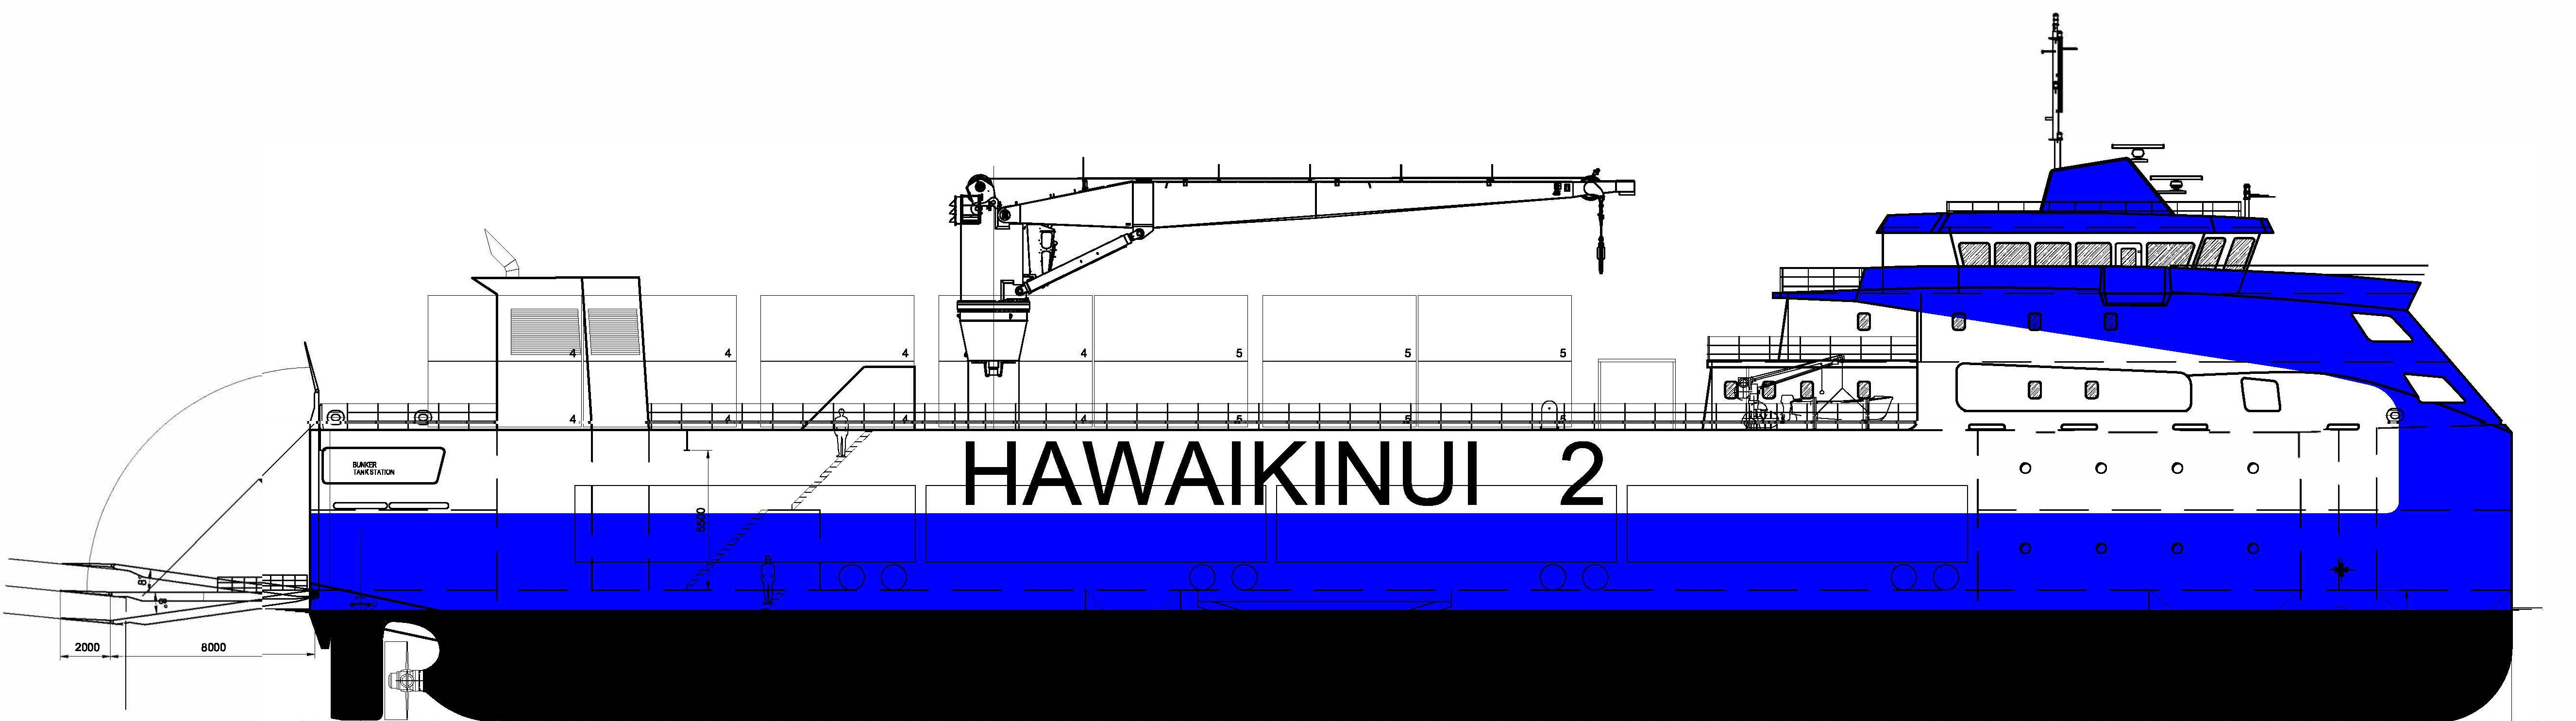 Hawaikinui 2 attendu début 2025 aux Raromatai 